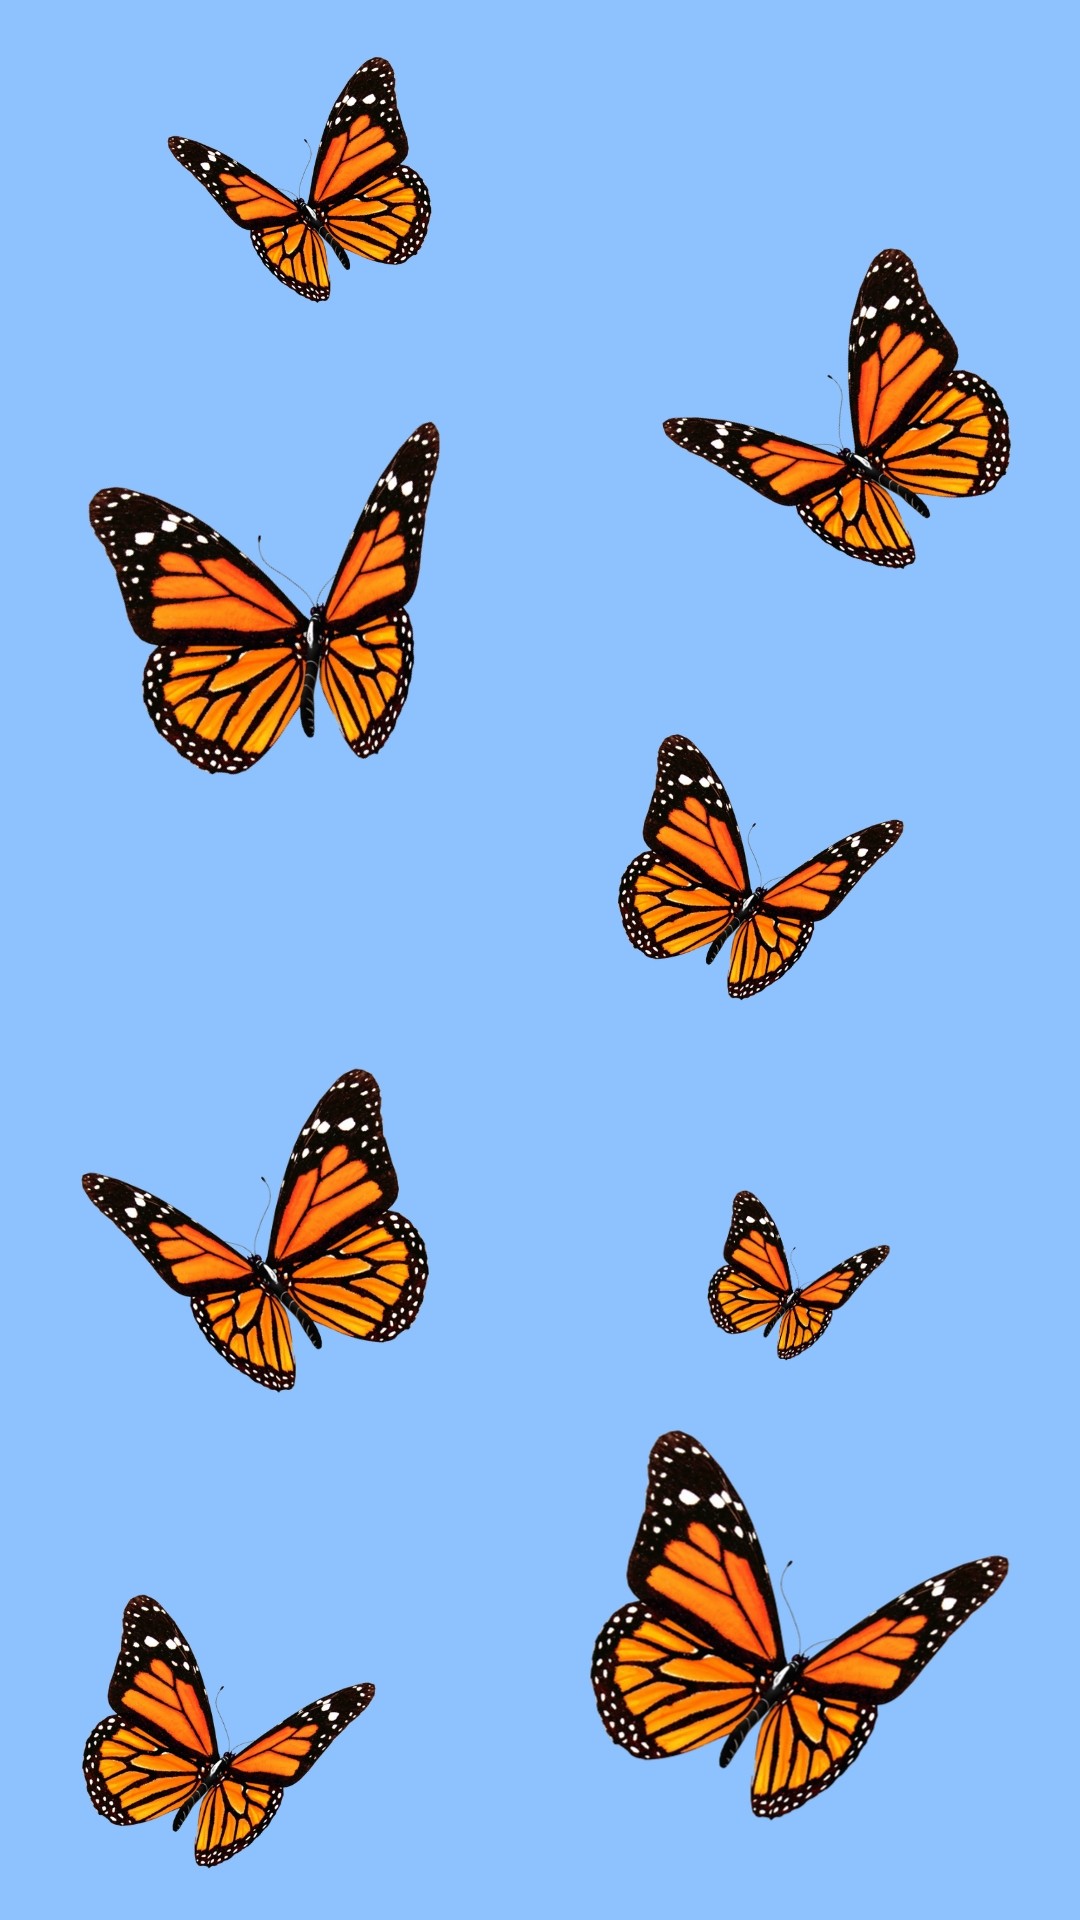 Aesthetic Butterfly lock screen wallpaper